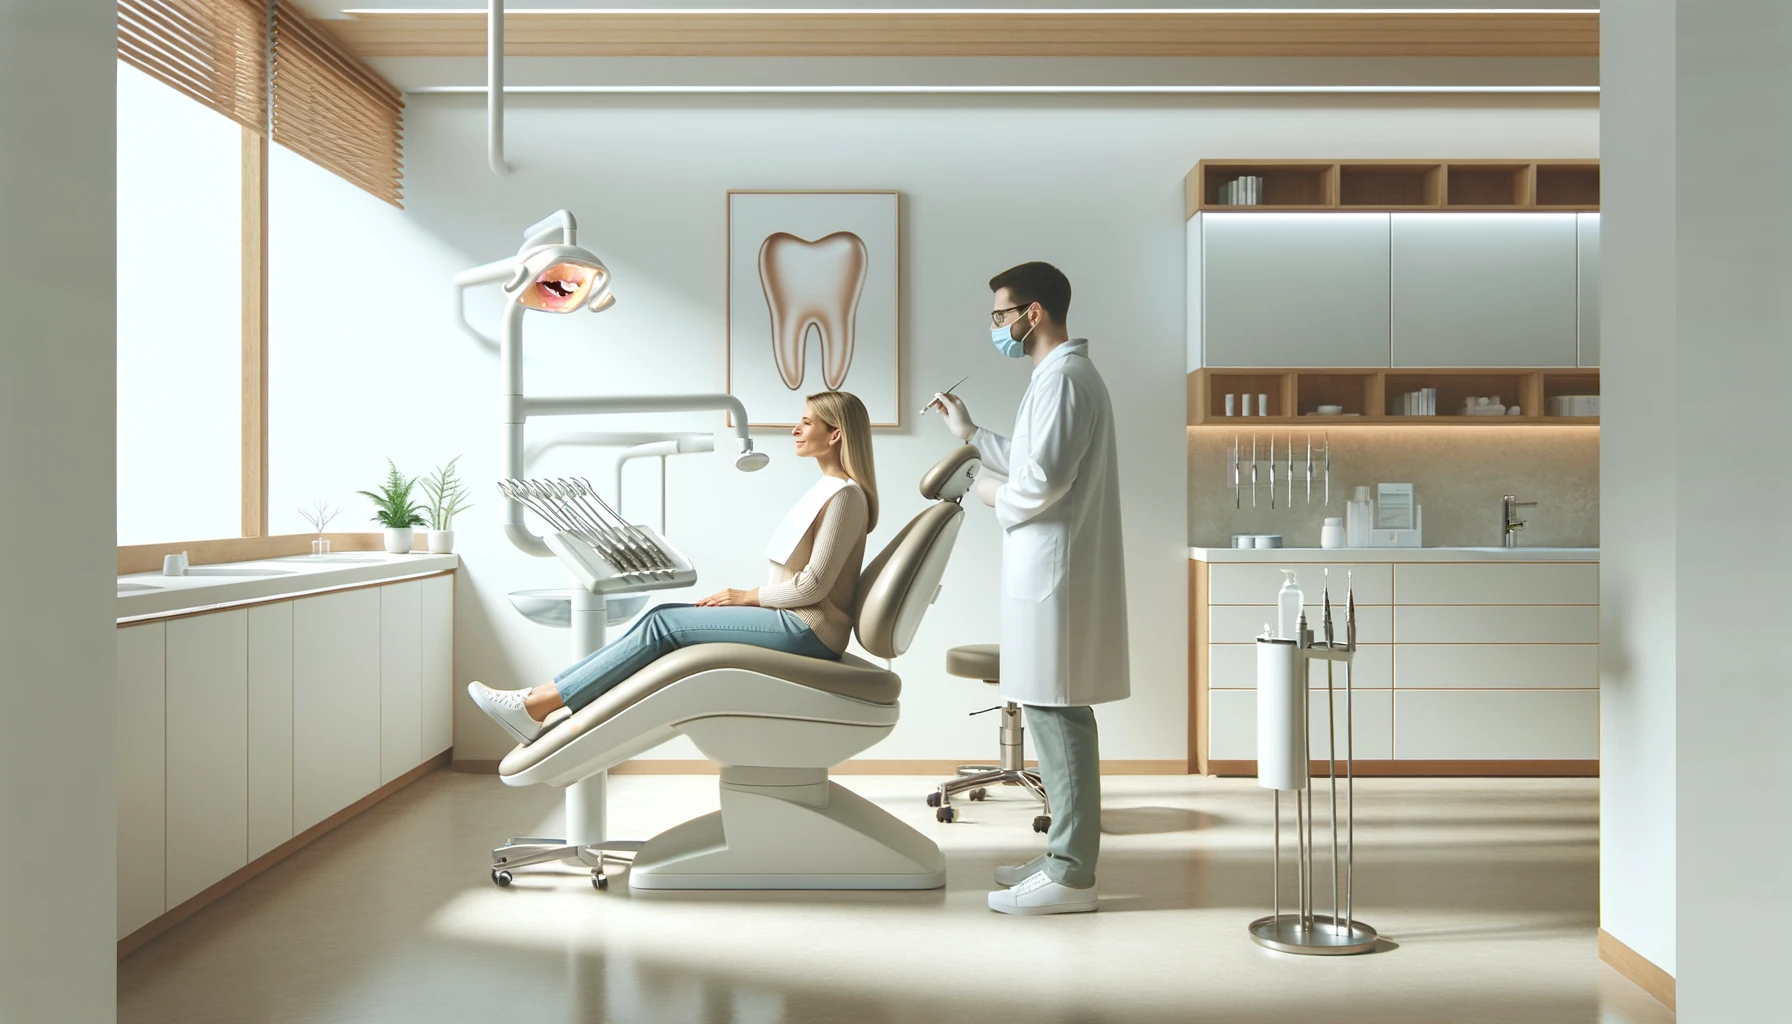 Tannlege viser riktig pusseteknikk til pasient i moderne skandinavisk klinikk